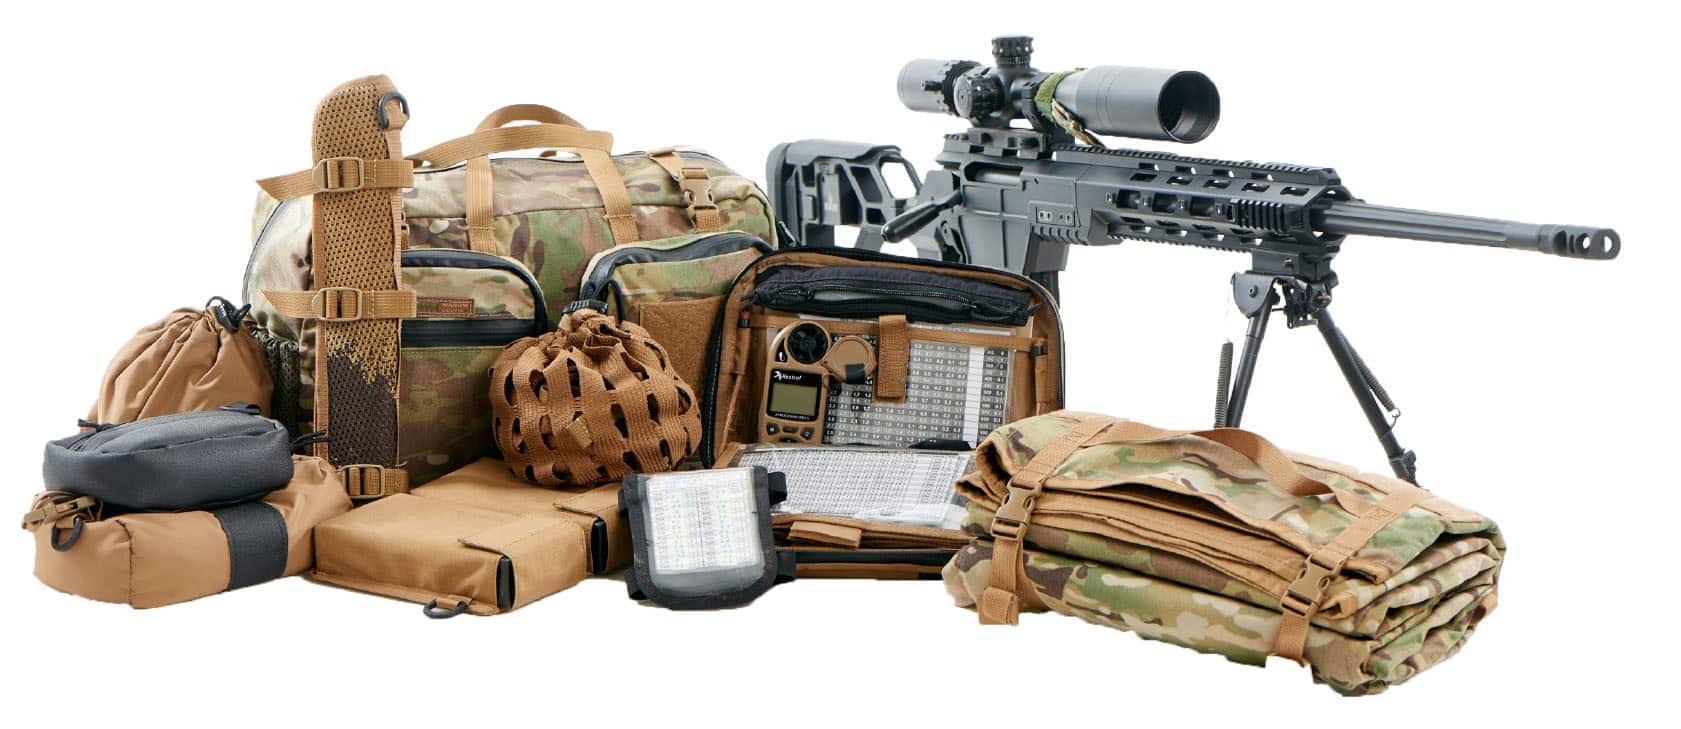 Marom Dolphin Tactical Sniper Kit - Full Kit (BG5440)